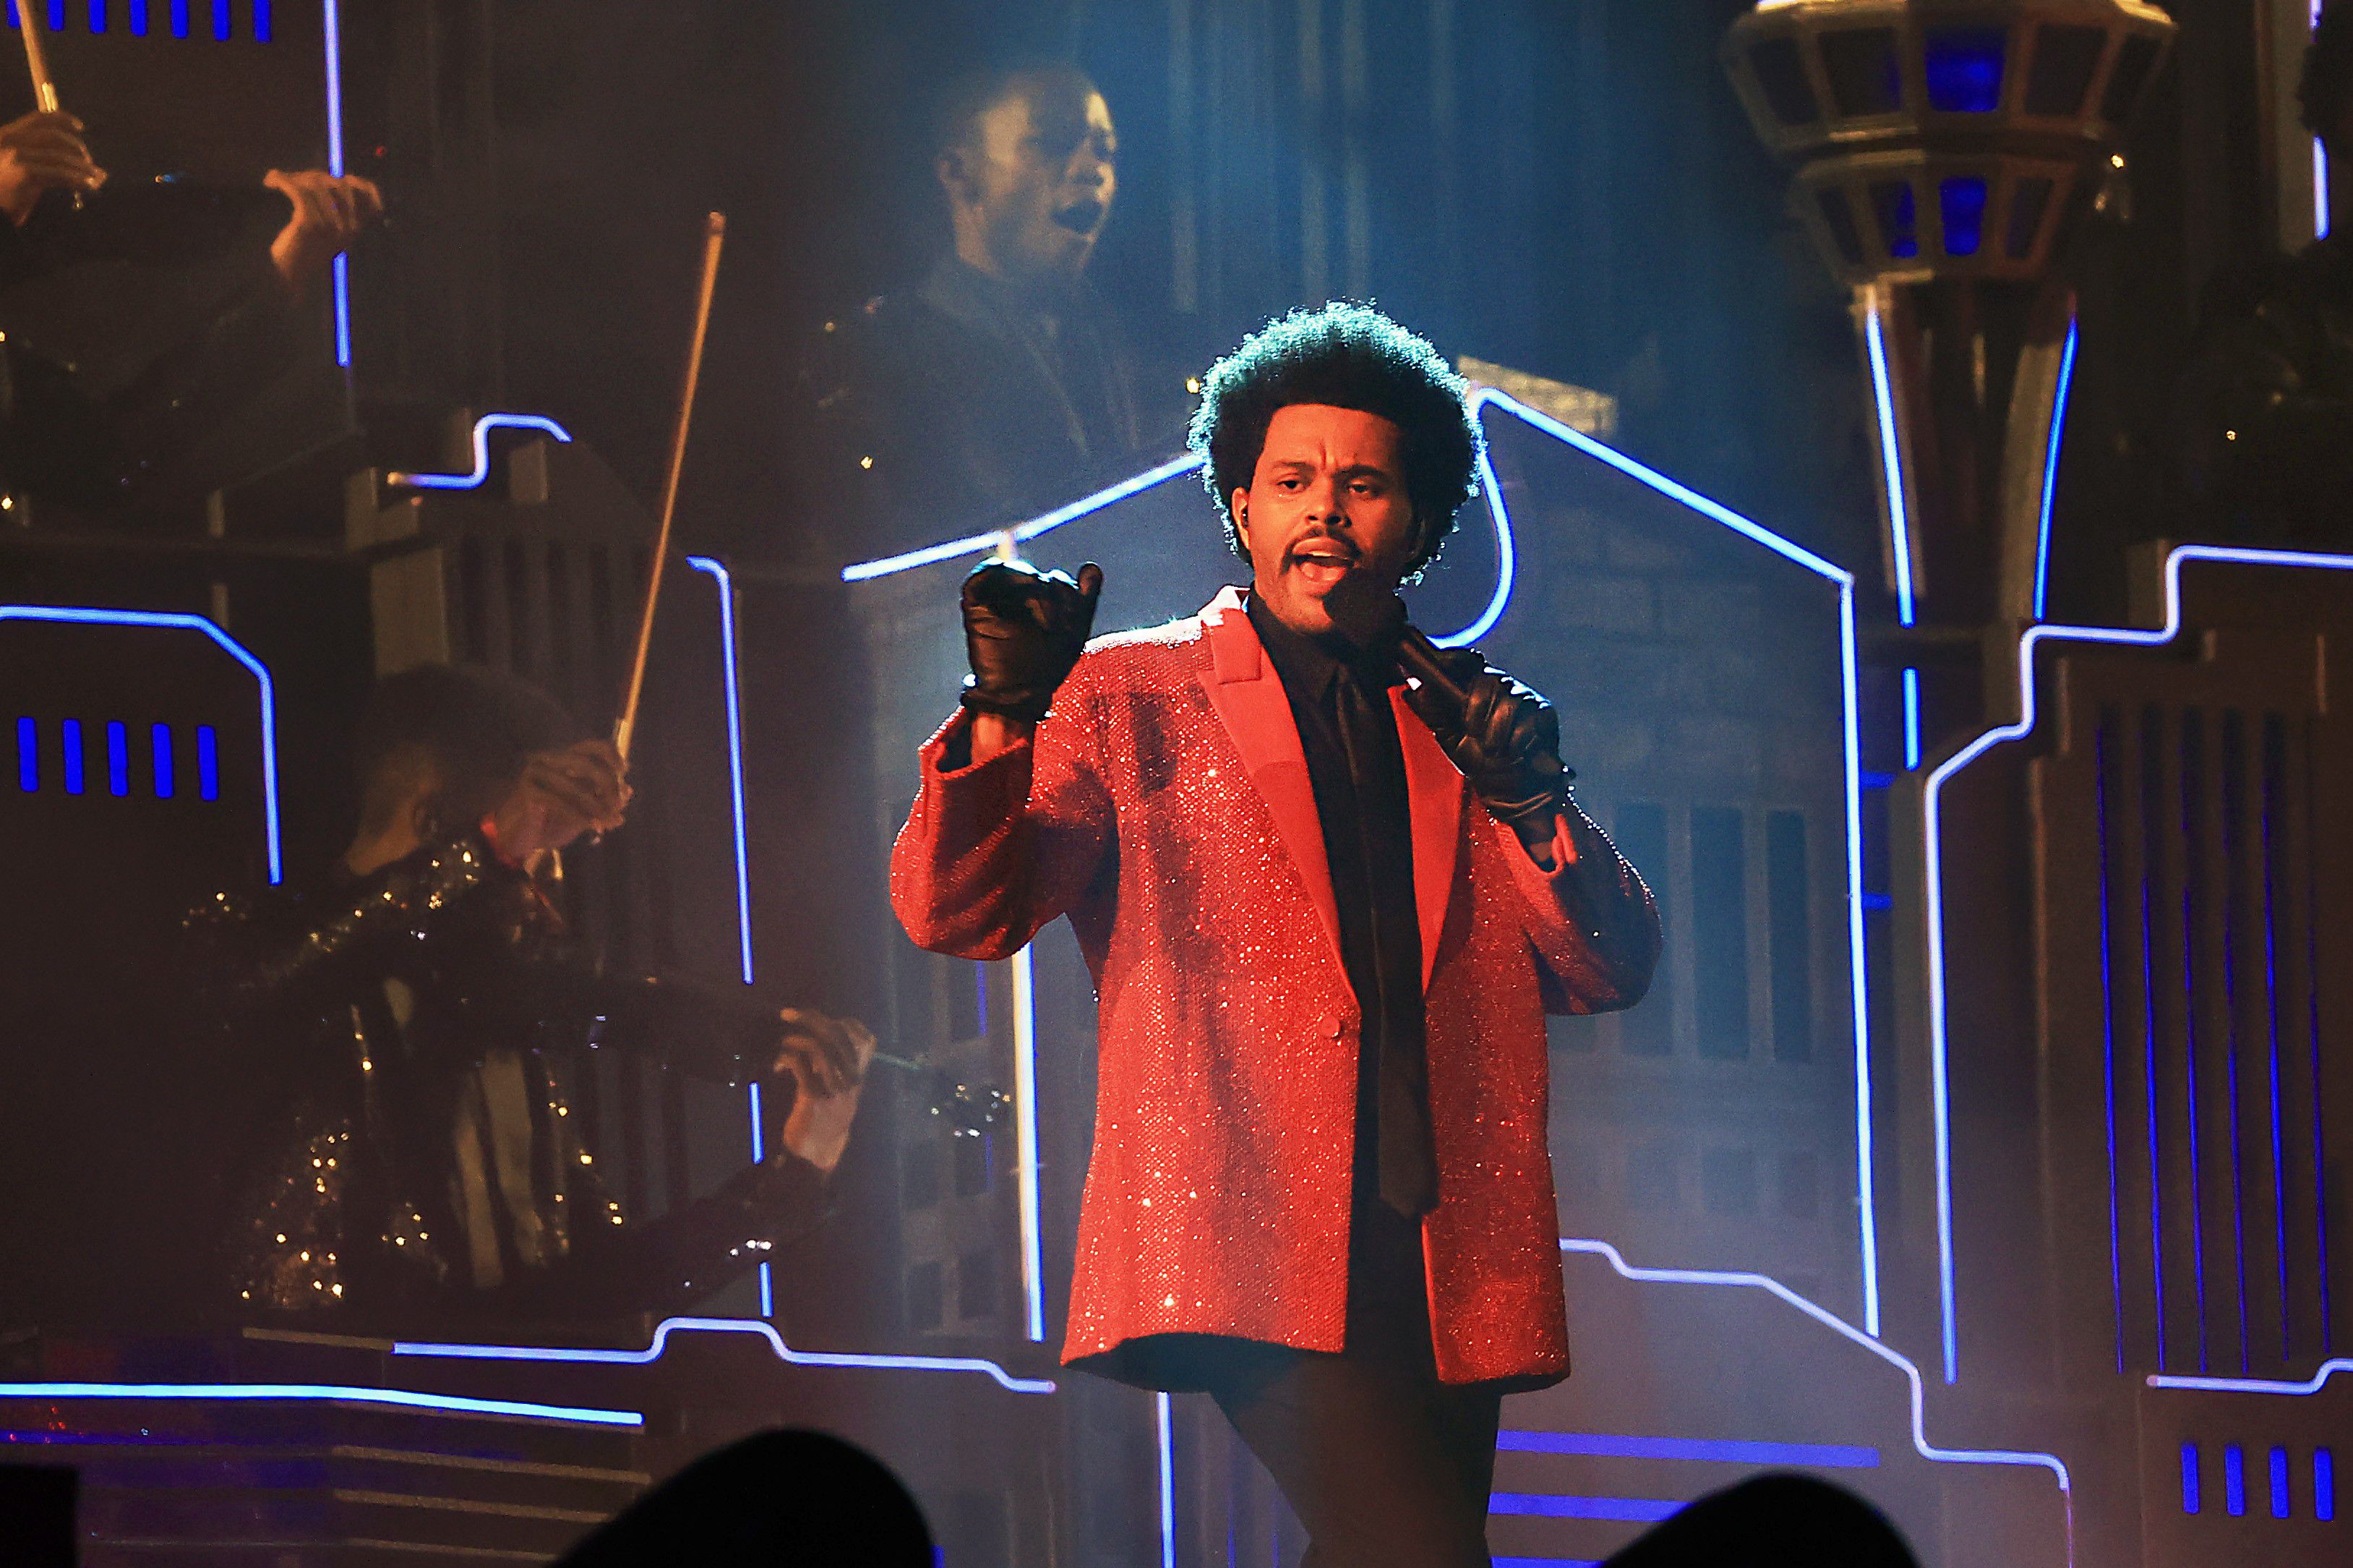 El show de medio tiempo de The Weeknd tuvo lugar en el Raymond James Stadium en Tampa, Florida.